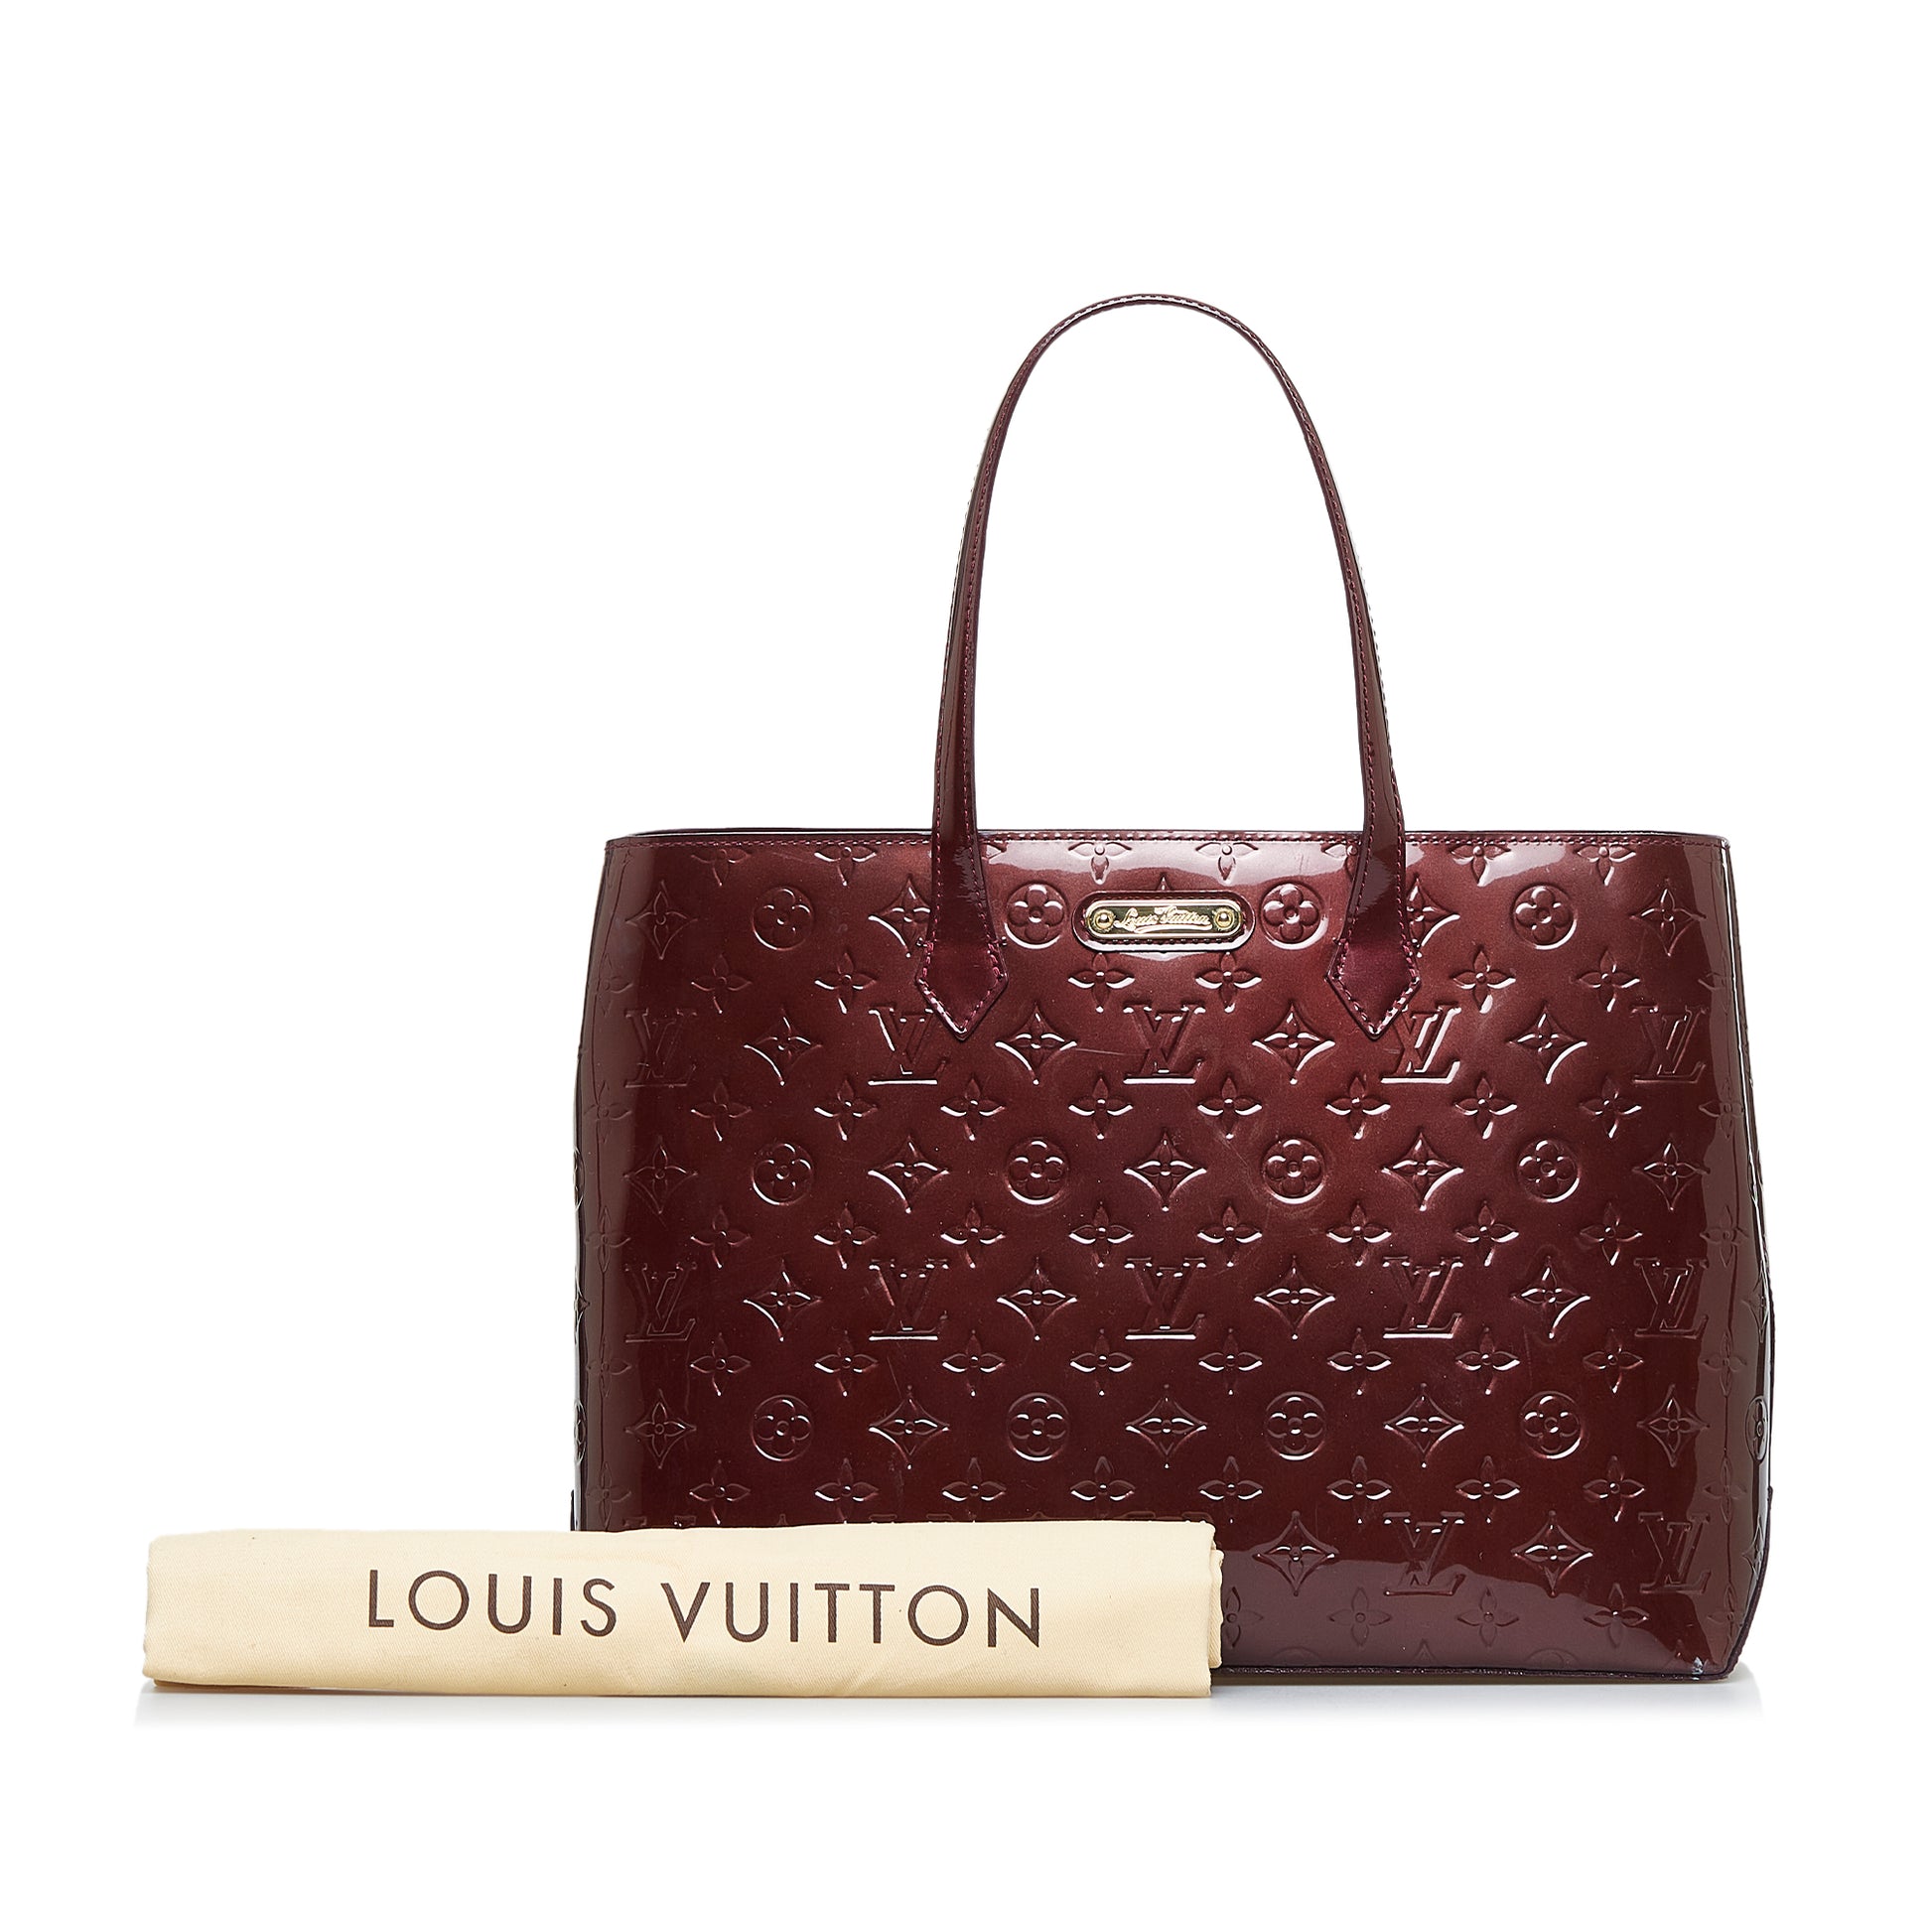 ❤️TOUR ~ Louis Vuitton Wilshire MM monogram tote 